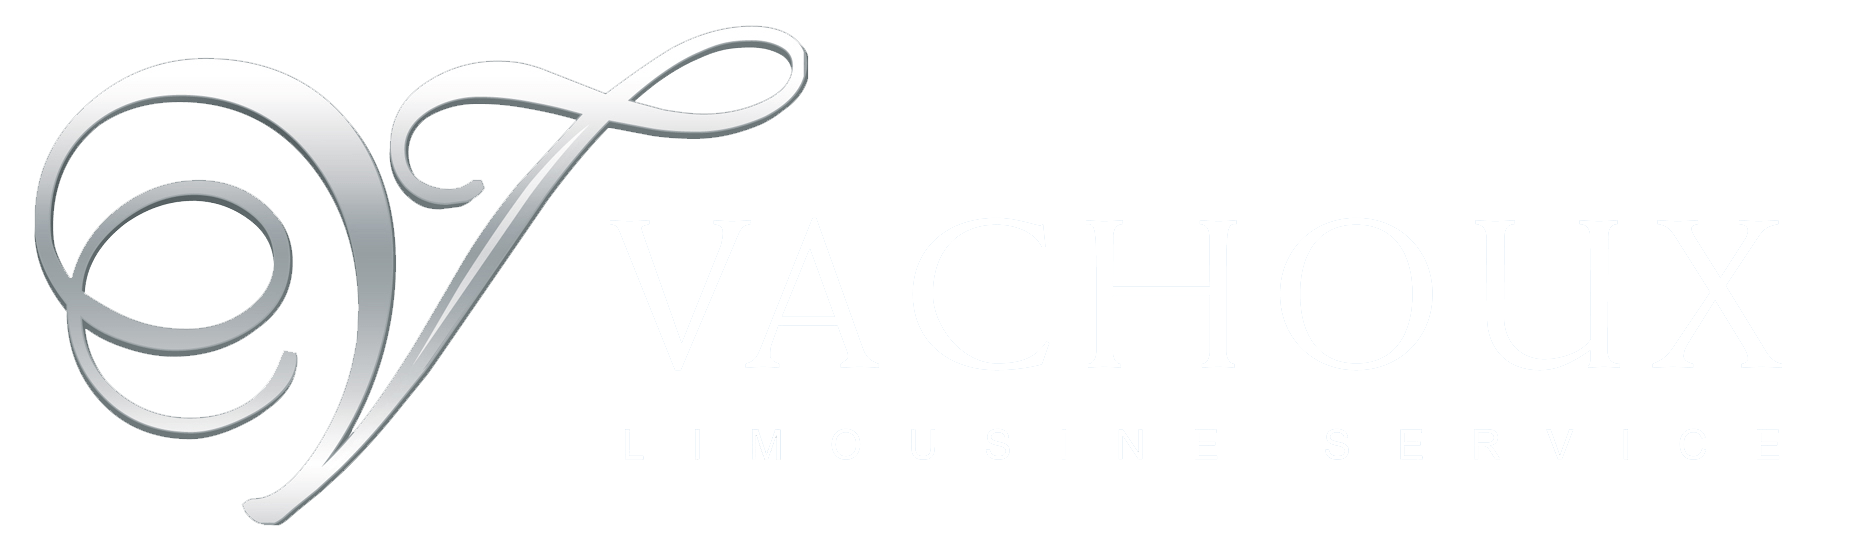 logo vachoux limousine service